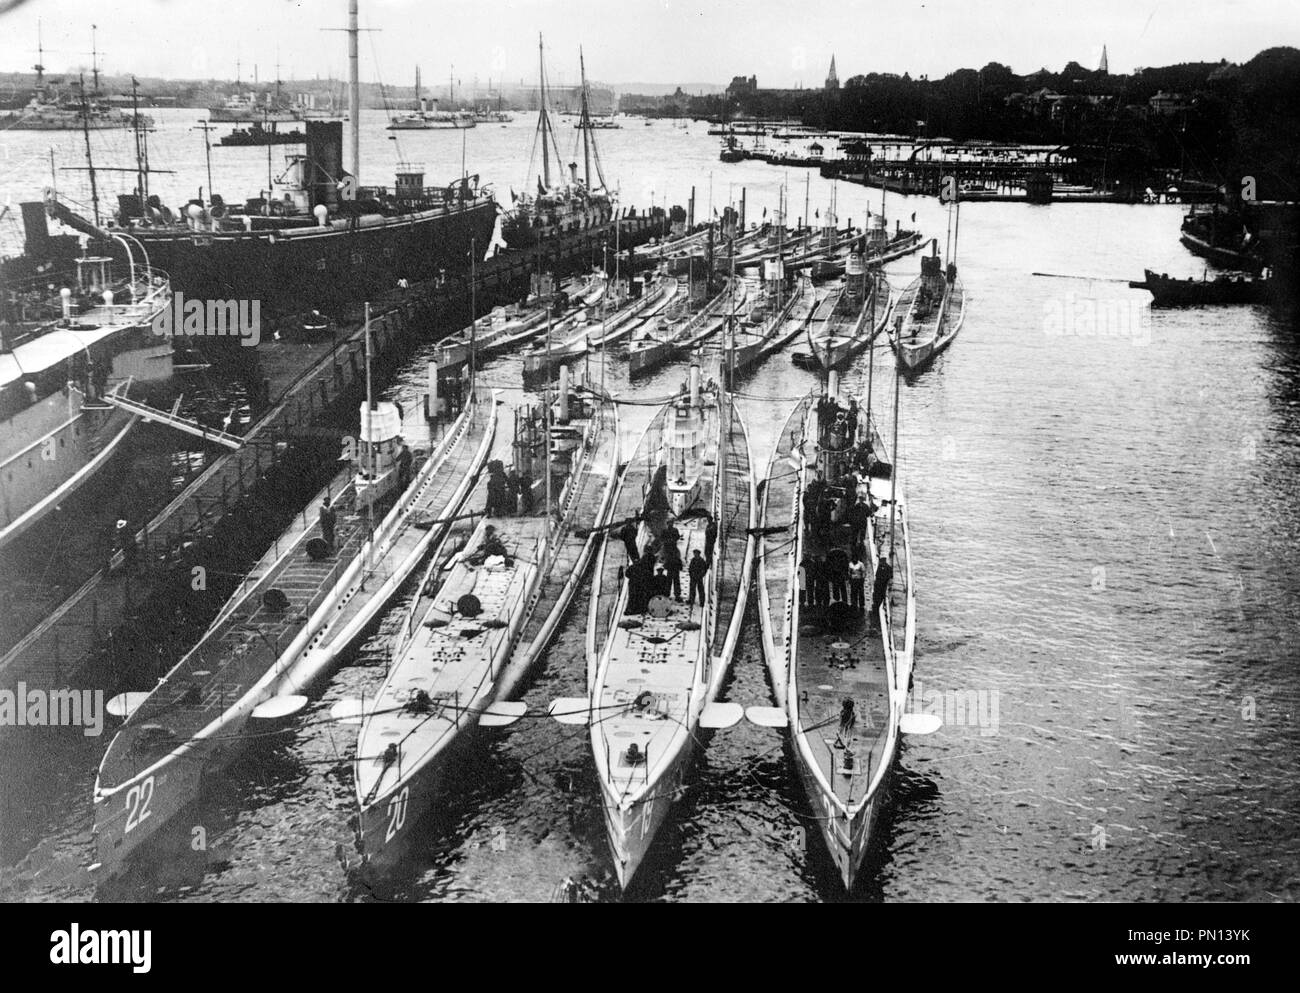 Sous-marins allemands dans le port. Sous-marins allemands dans un port. Première rangée (de gauche à droite) : U-22, U-20 (a coulé le Lusitania), U-19 et U-21. Deuxième rangée (de gauche à droite) : U-14, U-10 et U-12 Banque D'Images